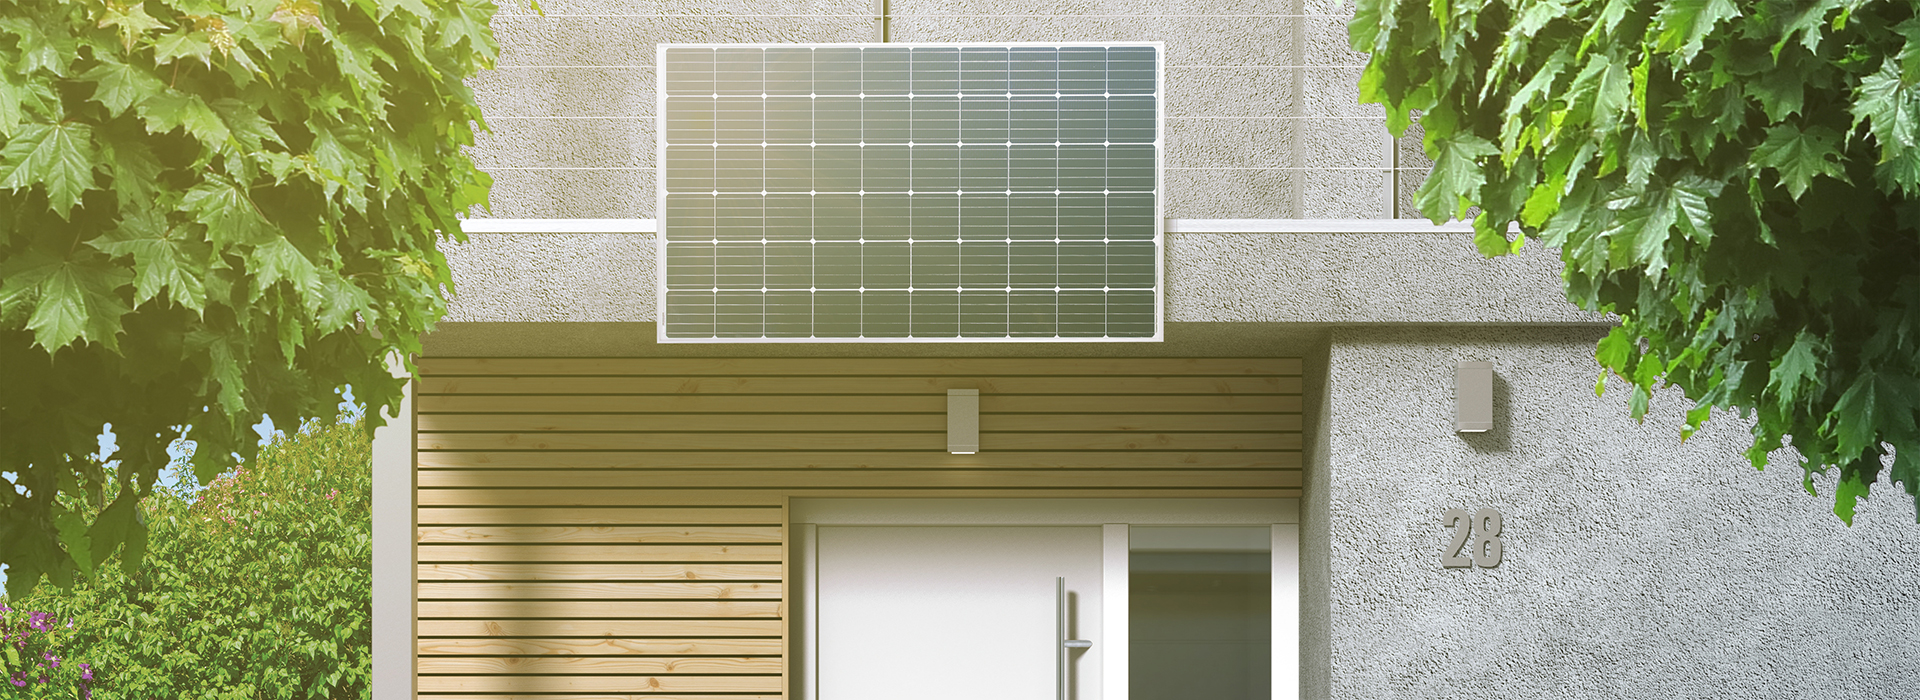 Solarstrom produzieren auf dem eigenen Dach?